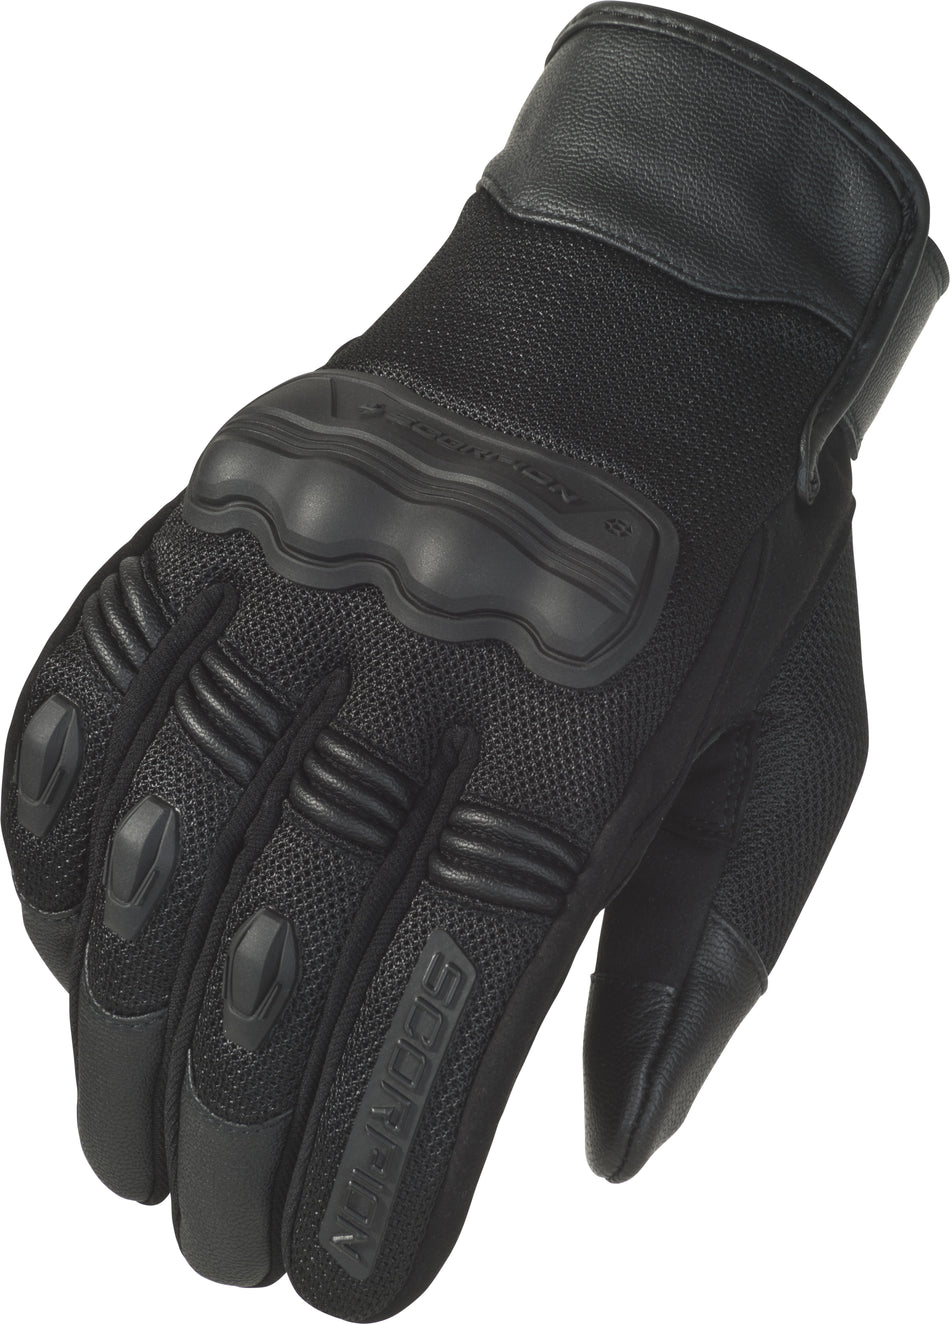 SCORPION EXO Divergent Gloves Black Md G33-034